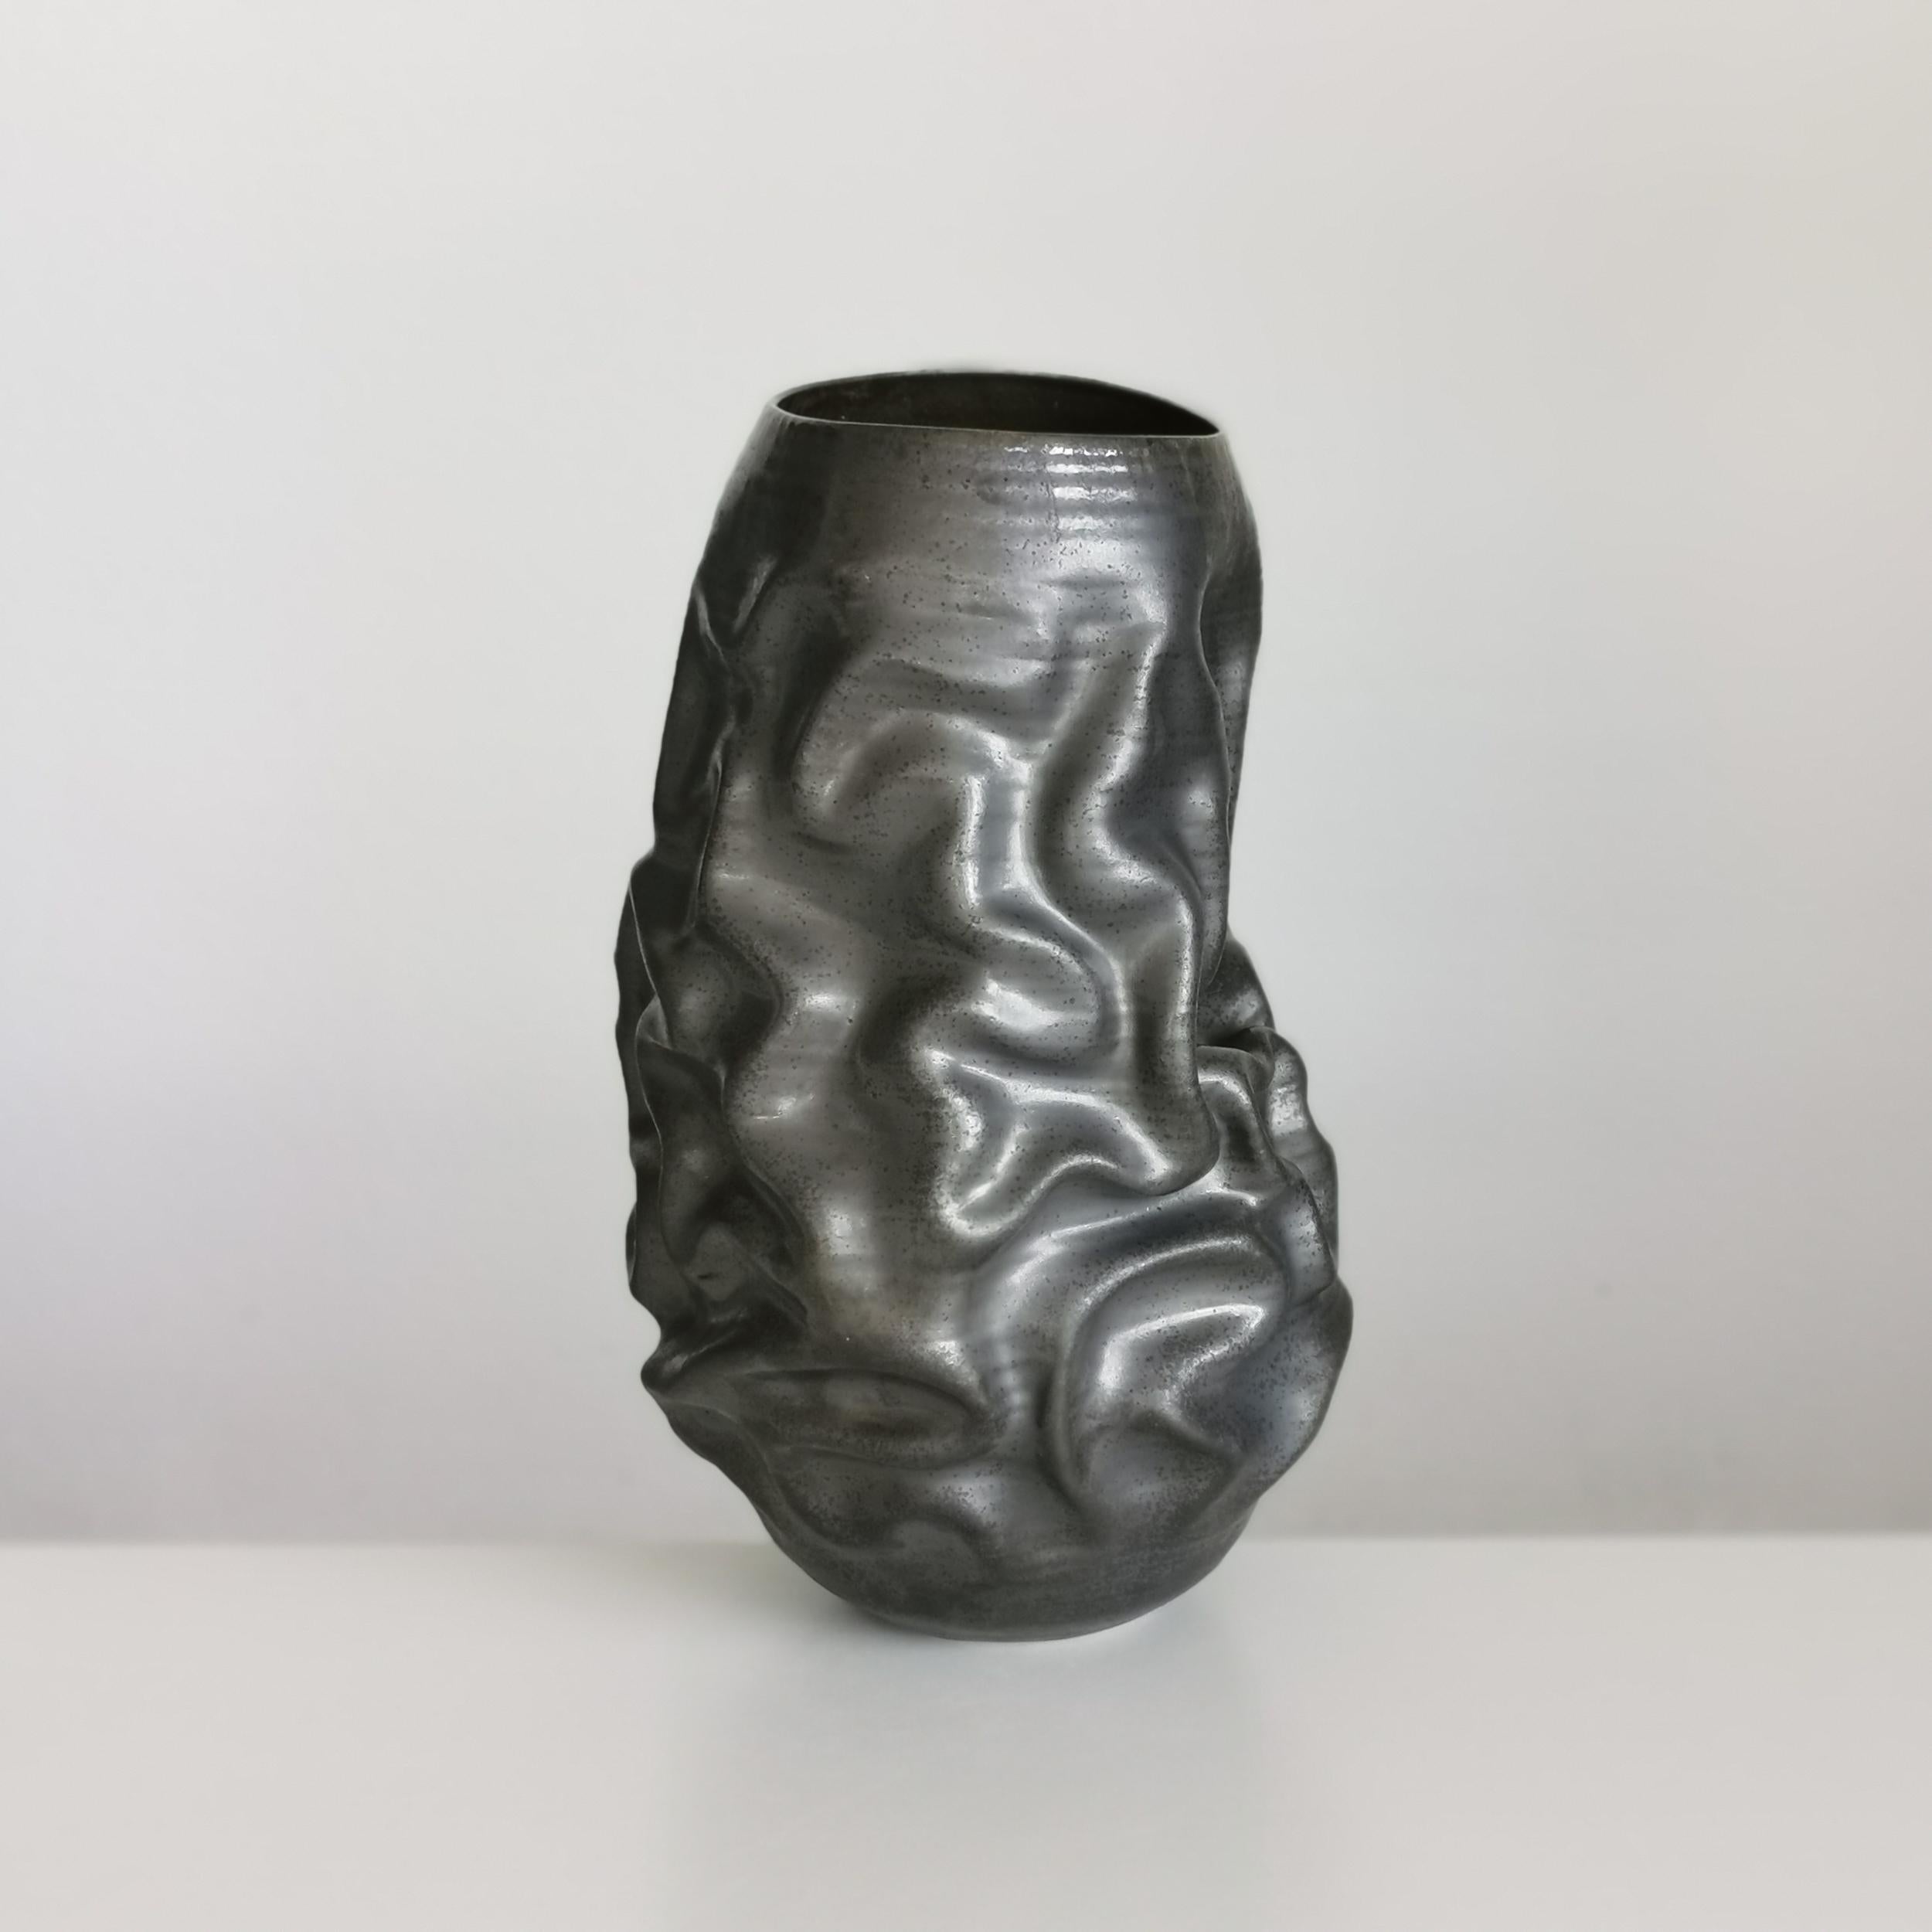 Contemporary Pair of Unique Ceramic Sculptures Vessels 'Water Landscapes' Objet d'Art For Sale